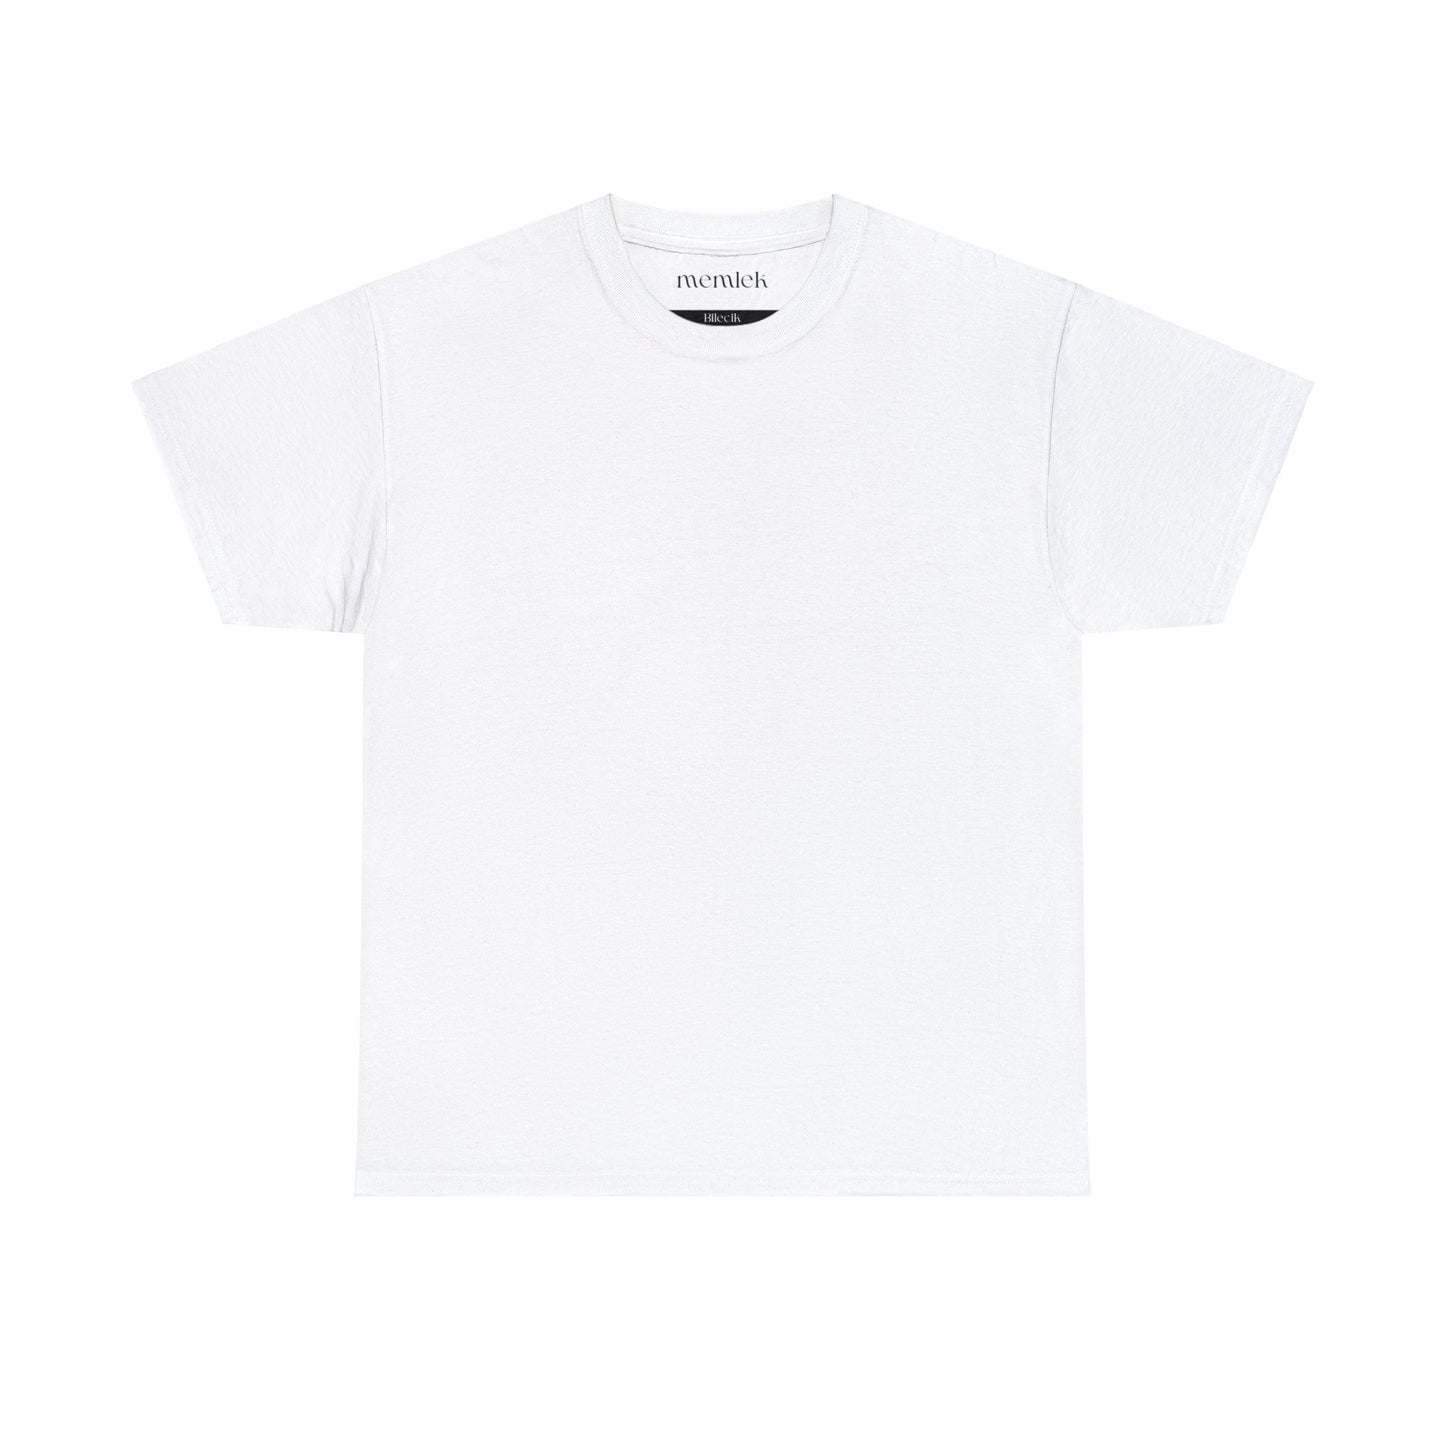 Siyah Lale - 11 Bilecik - T-Shirt - Back Print - Black/White